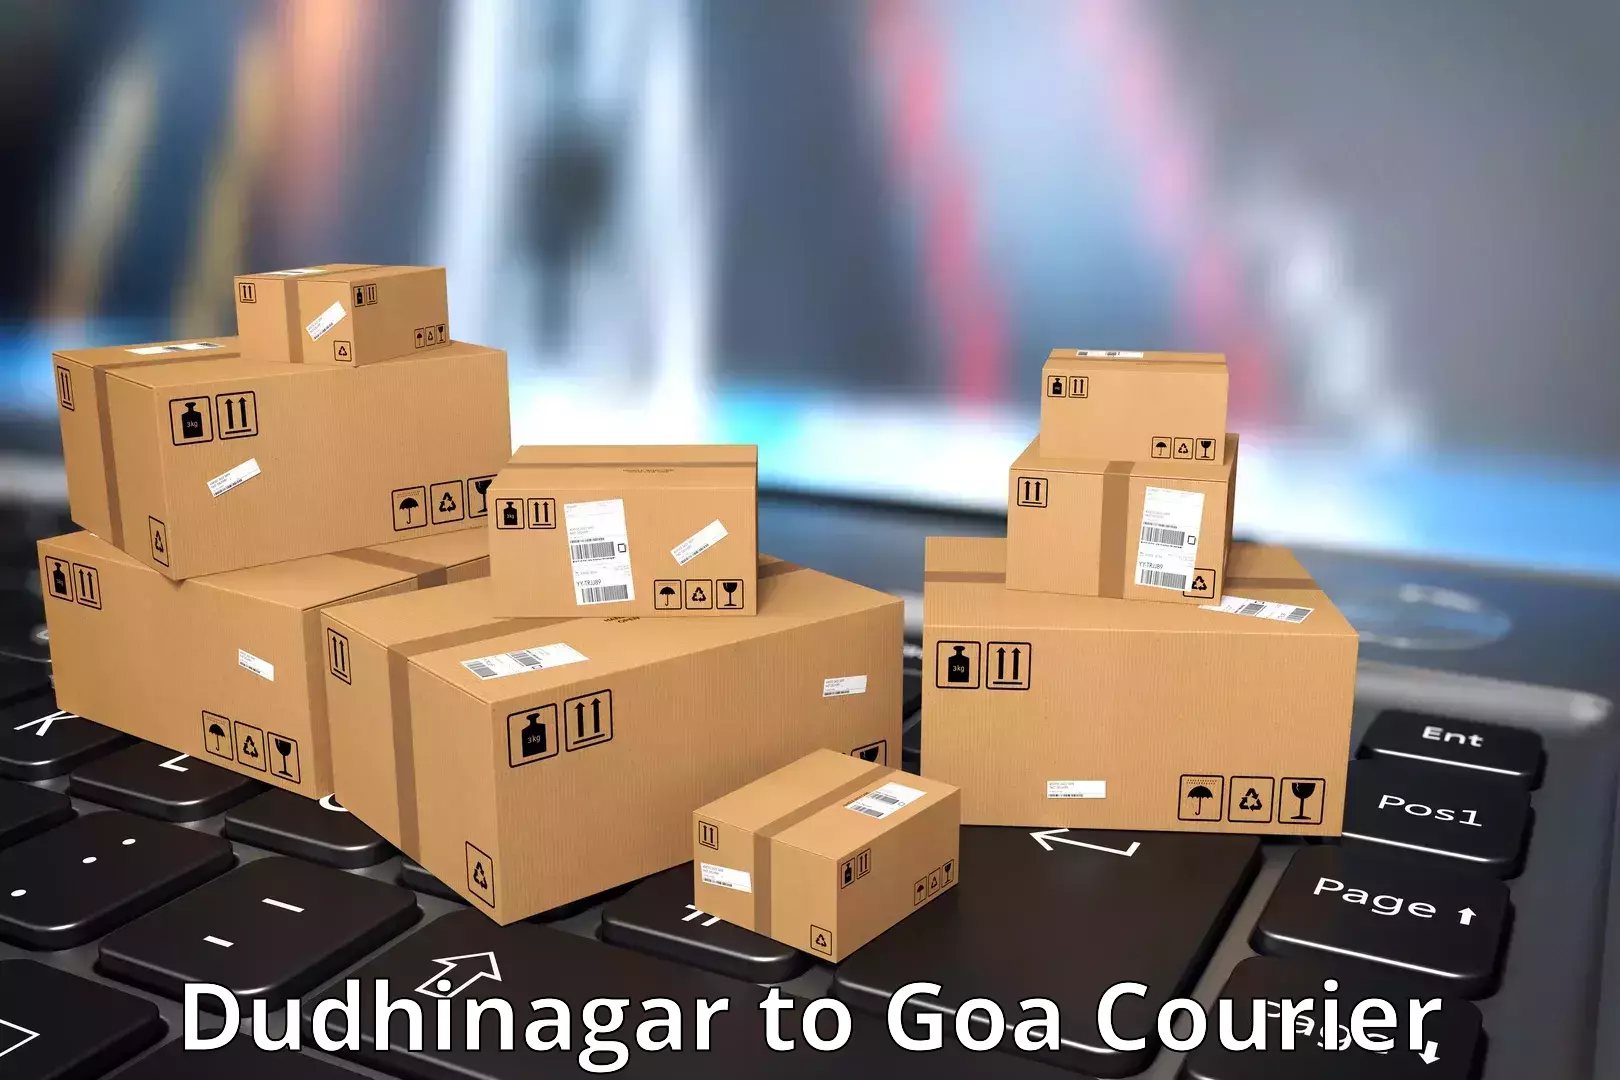 Express postal services Dudhinagar to IIT Goa